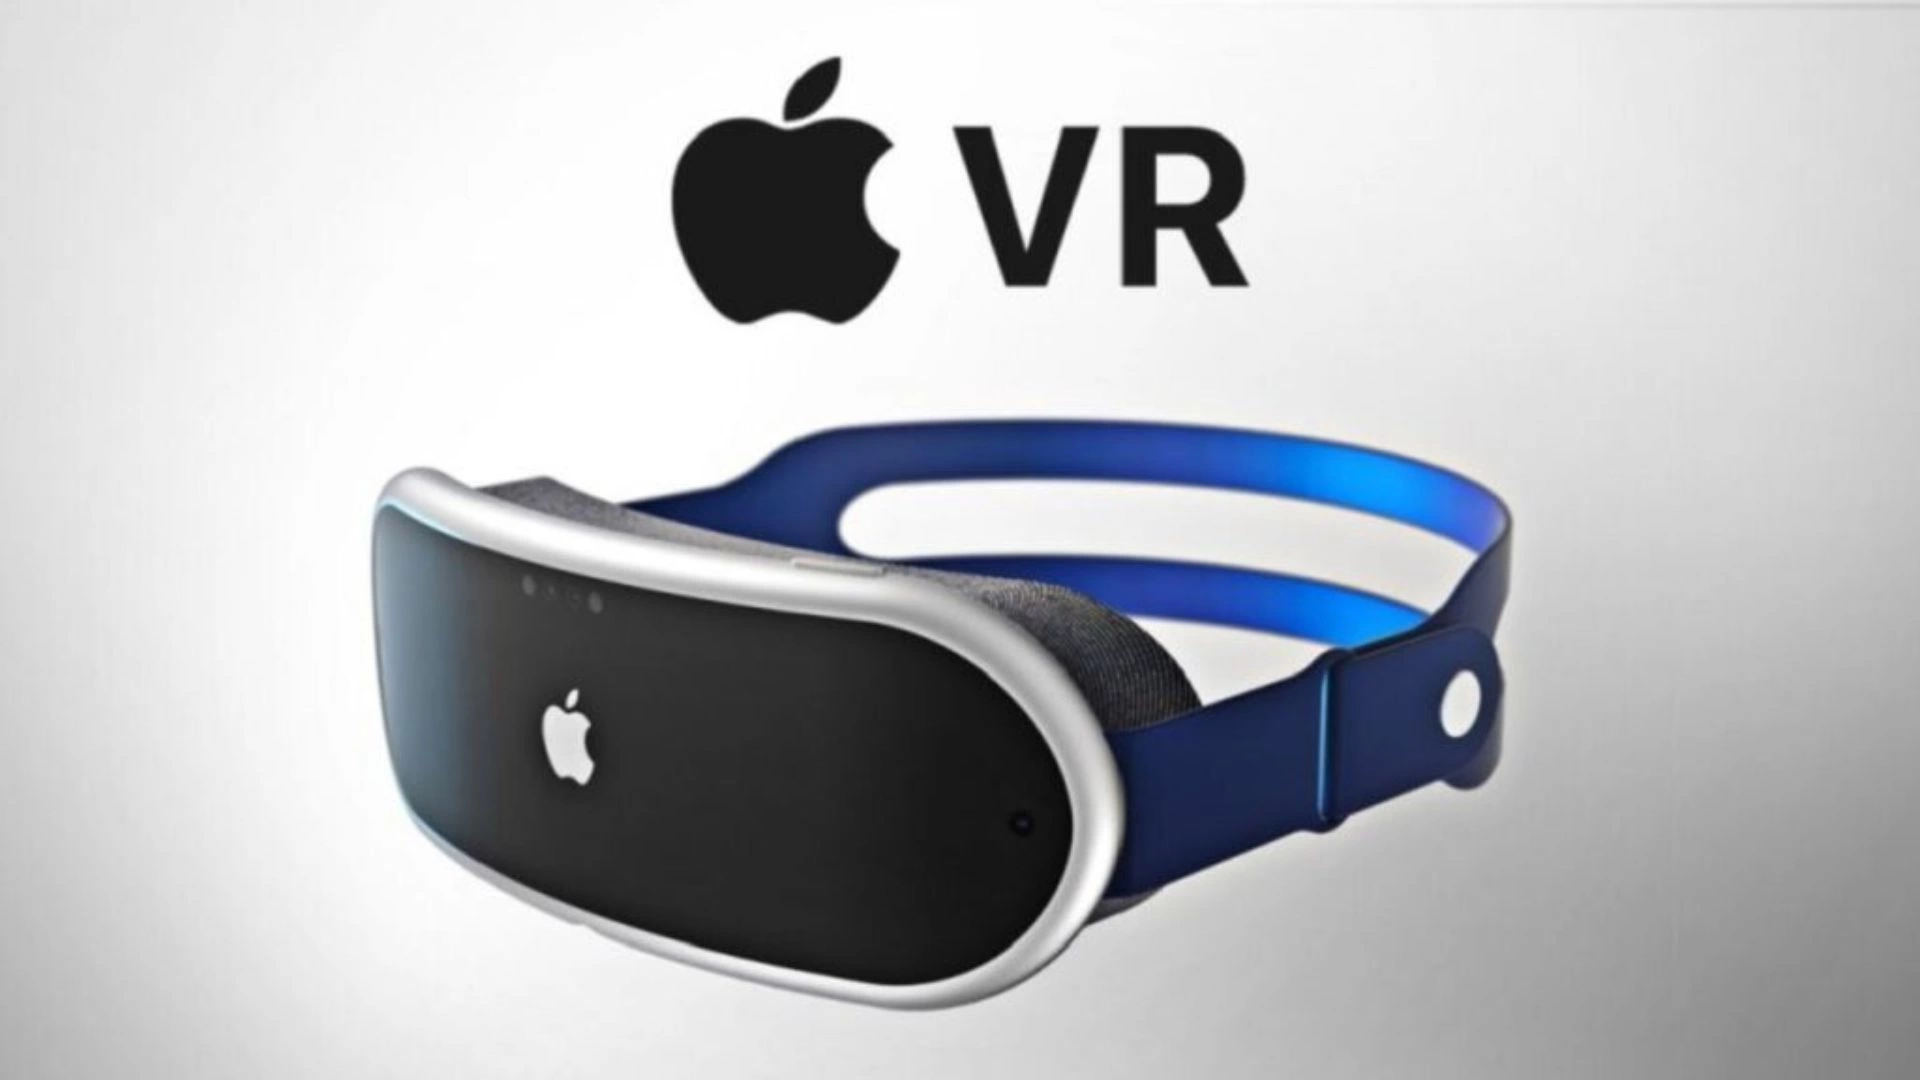 Cтоимость новейшего VR-шлема Reality Pro от Apple будет около $4000